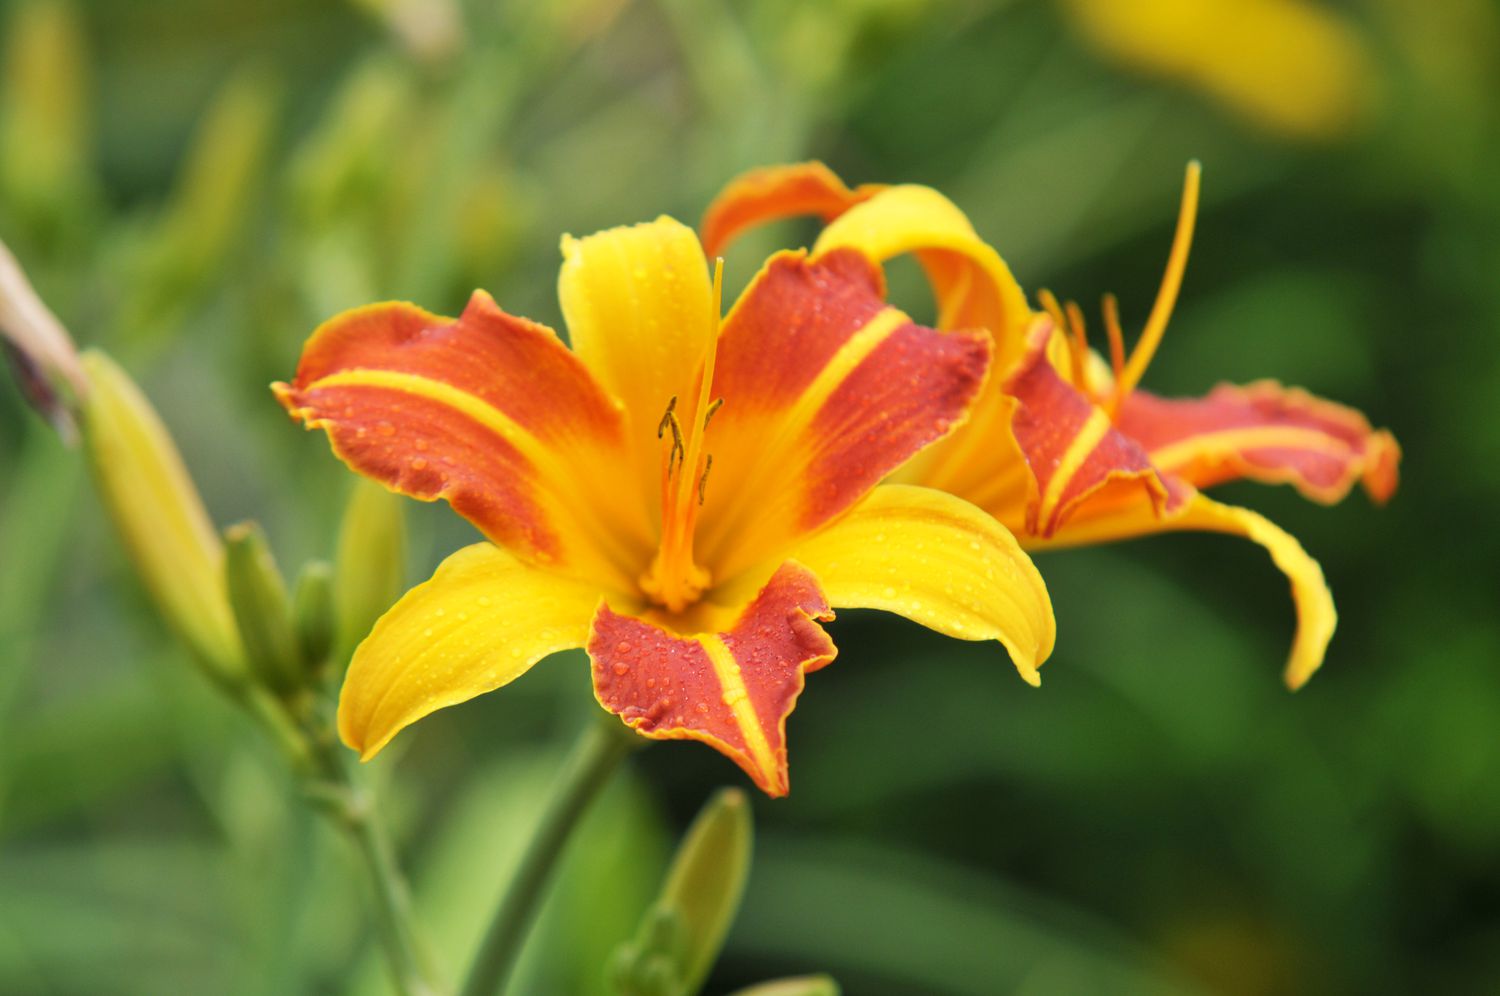 Hemerocallis day lilies com flores amarelas e vermelhas com botões